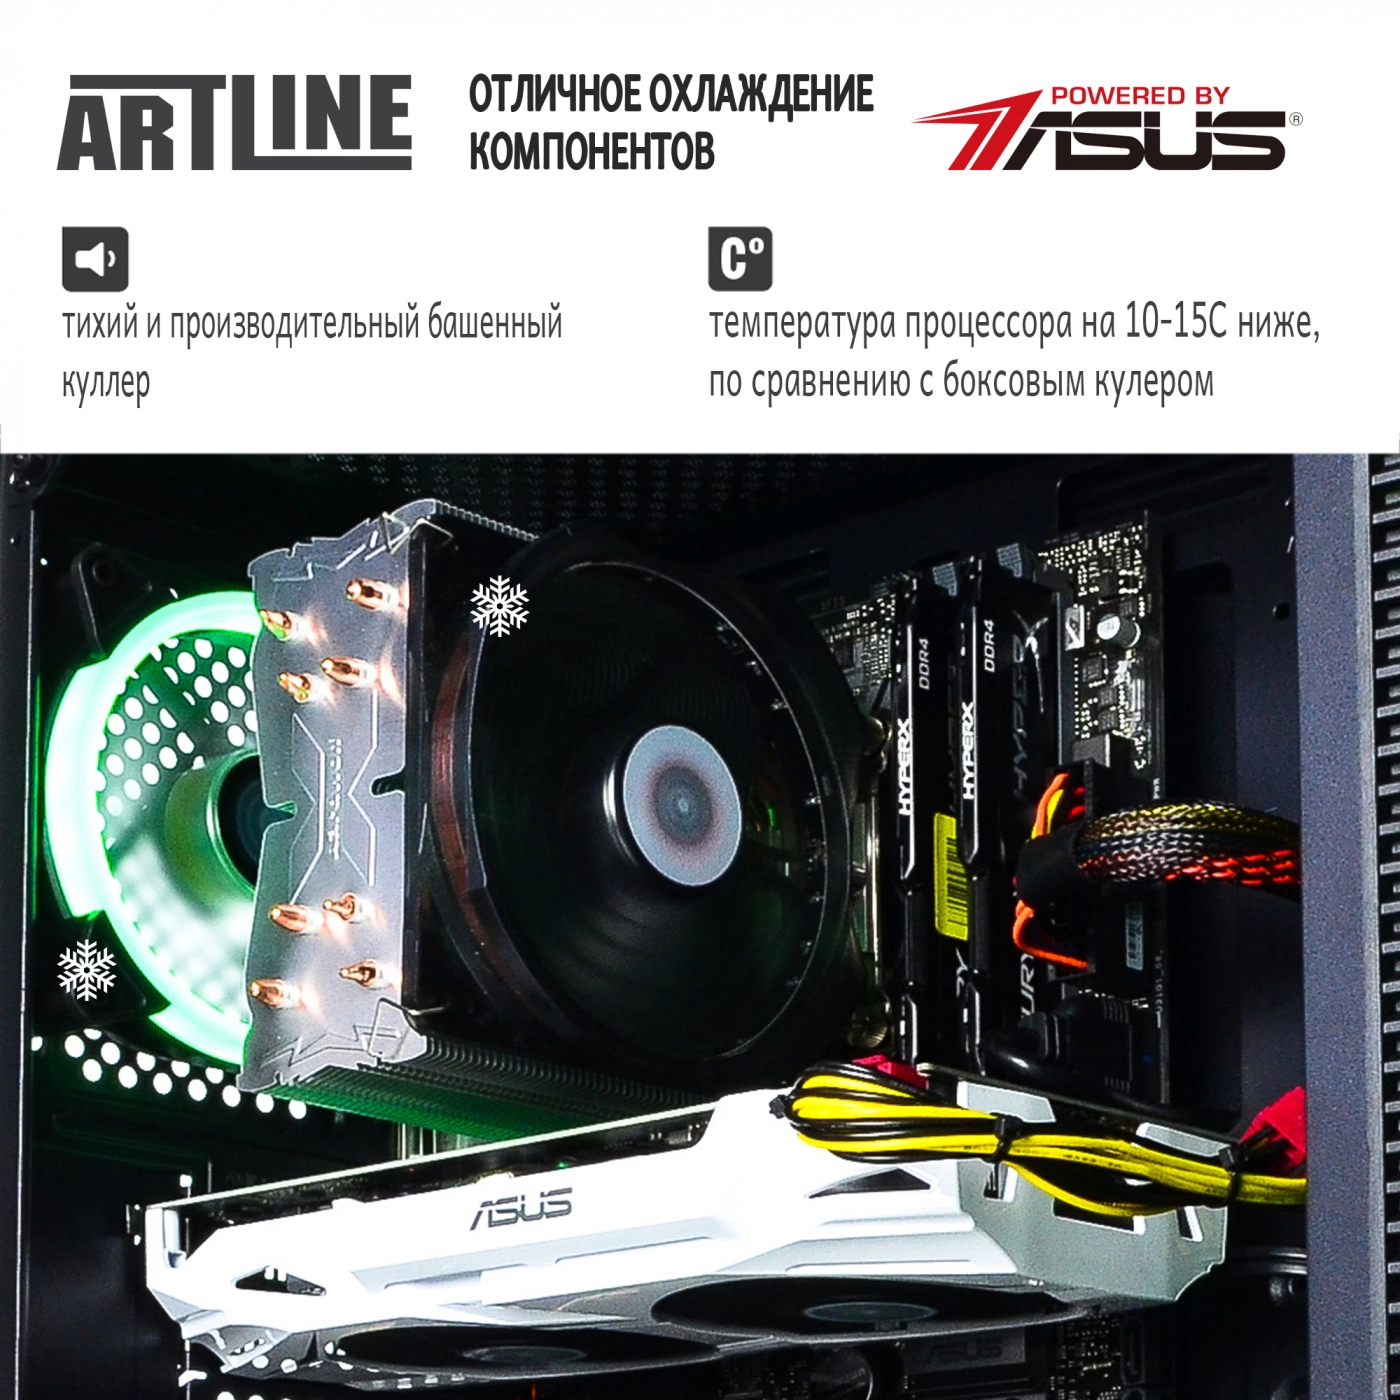 Купить Компьютер ARTLINE Gaming X75v14 - фото 3